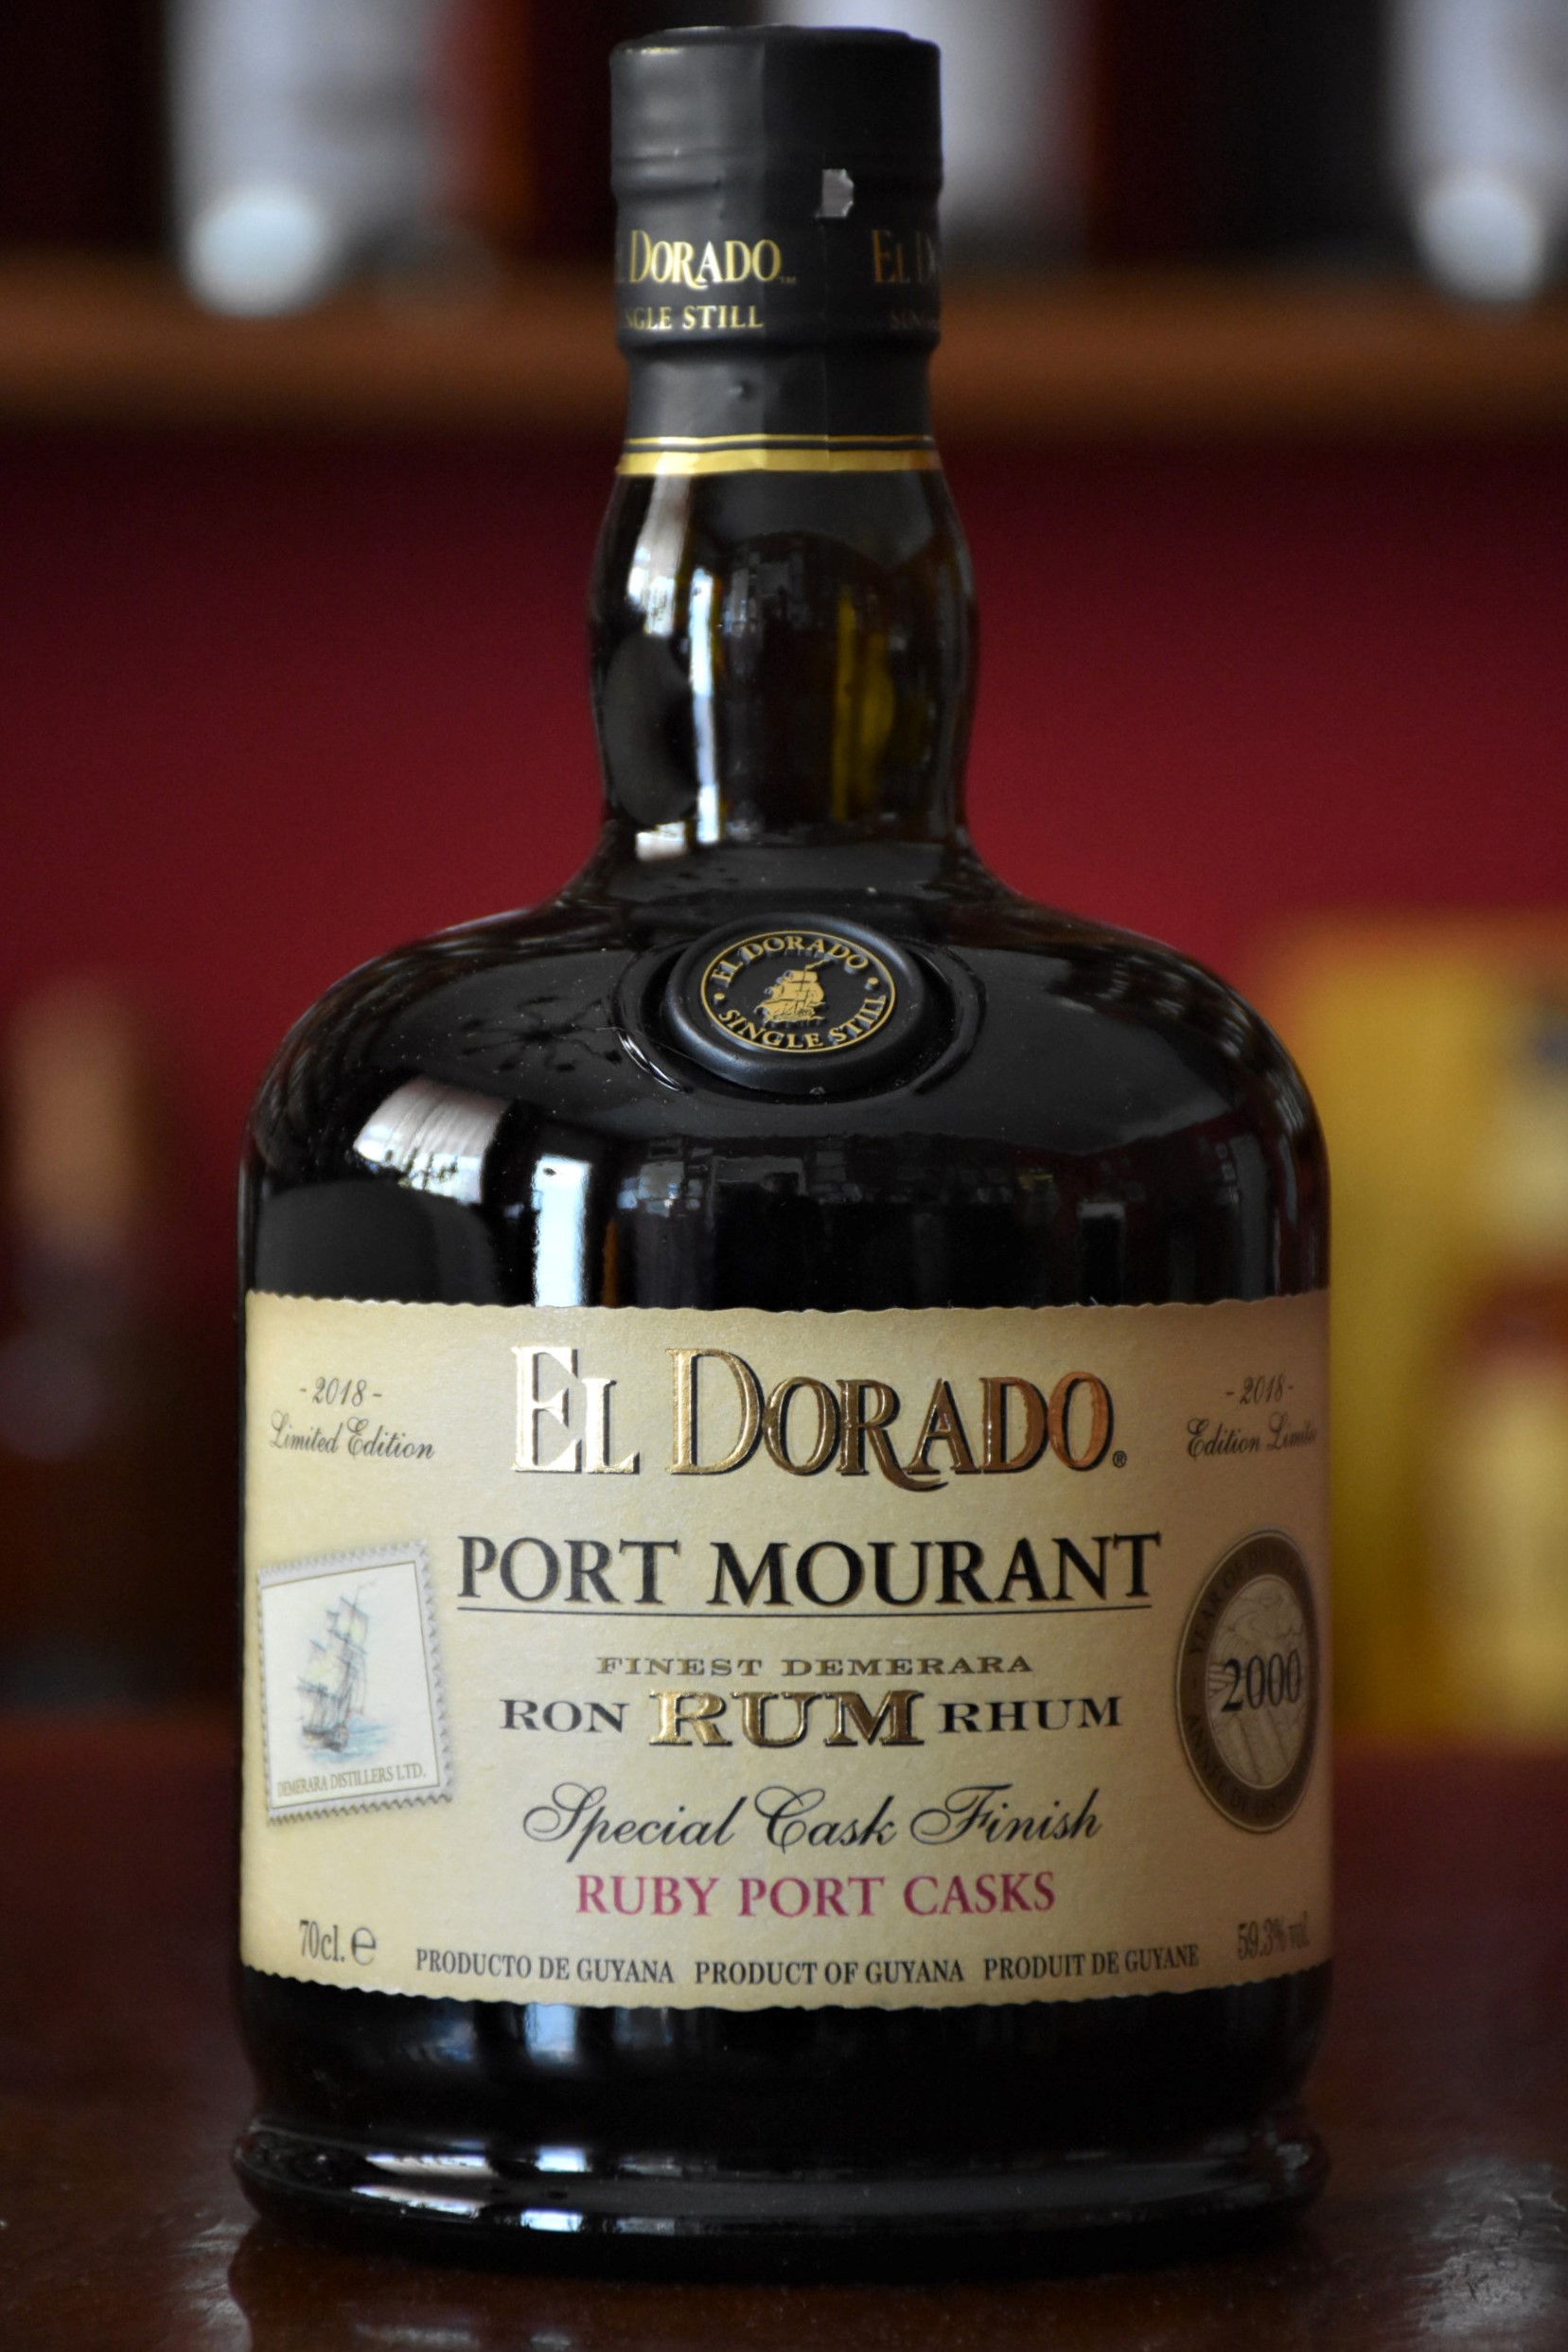 El Dorado Port Mourant 2000/2018 - Ruby Port Special Cask Finish, 59,3% Alc.Vol., Demarara Distillers Ltd.